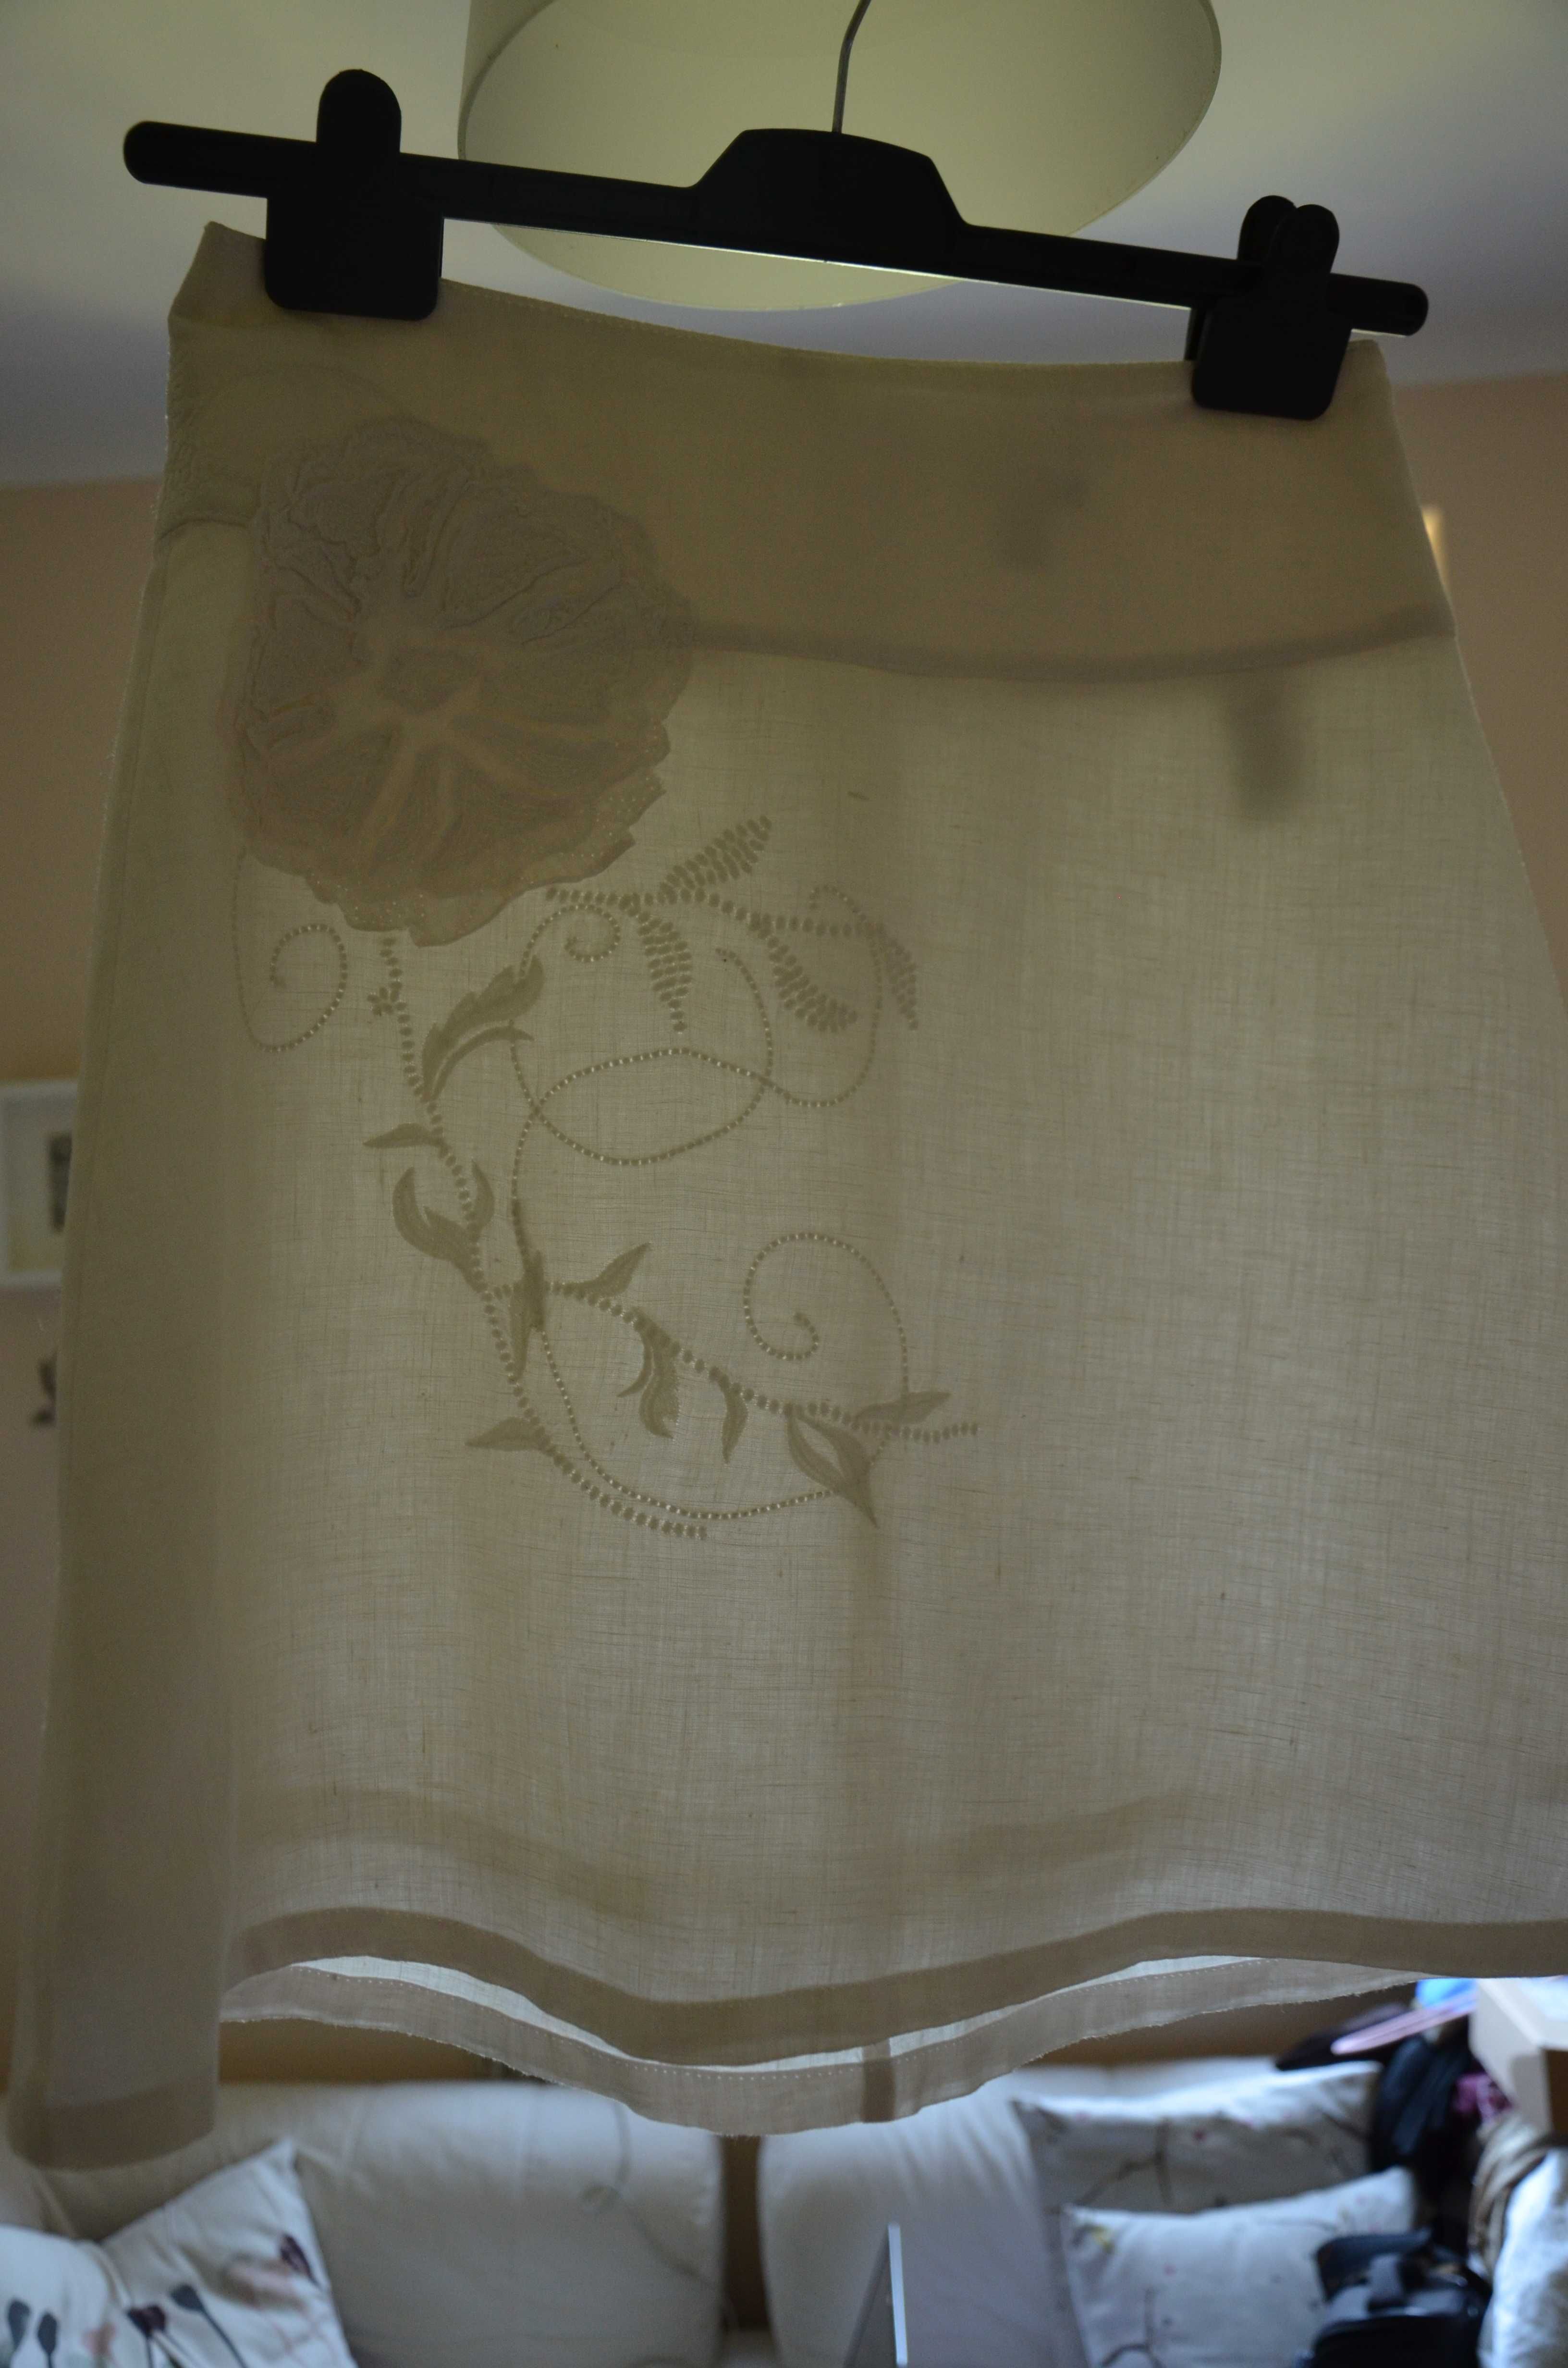 Biała spódnica lniana z haftem H&M r. 36